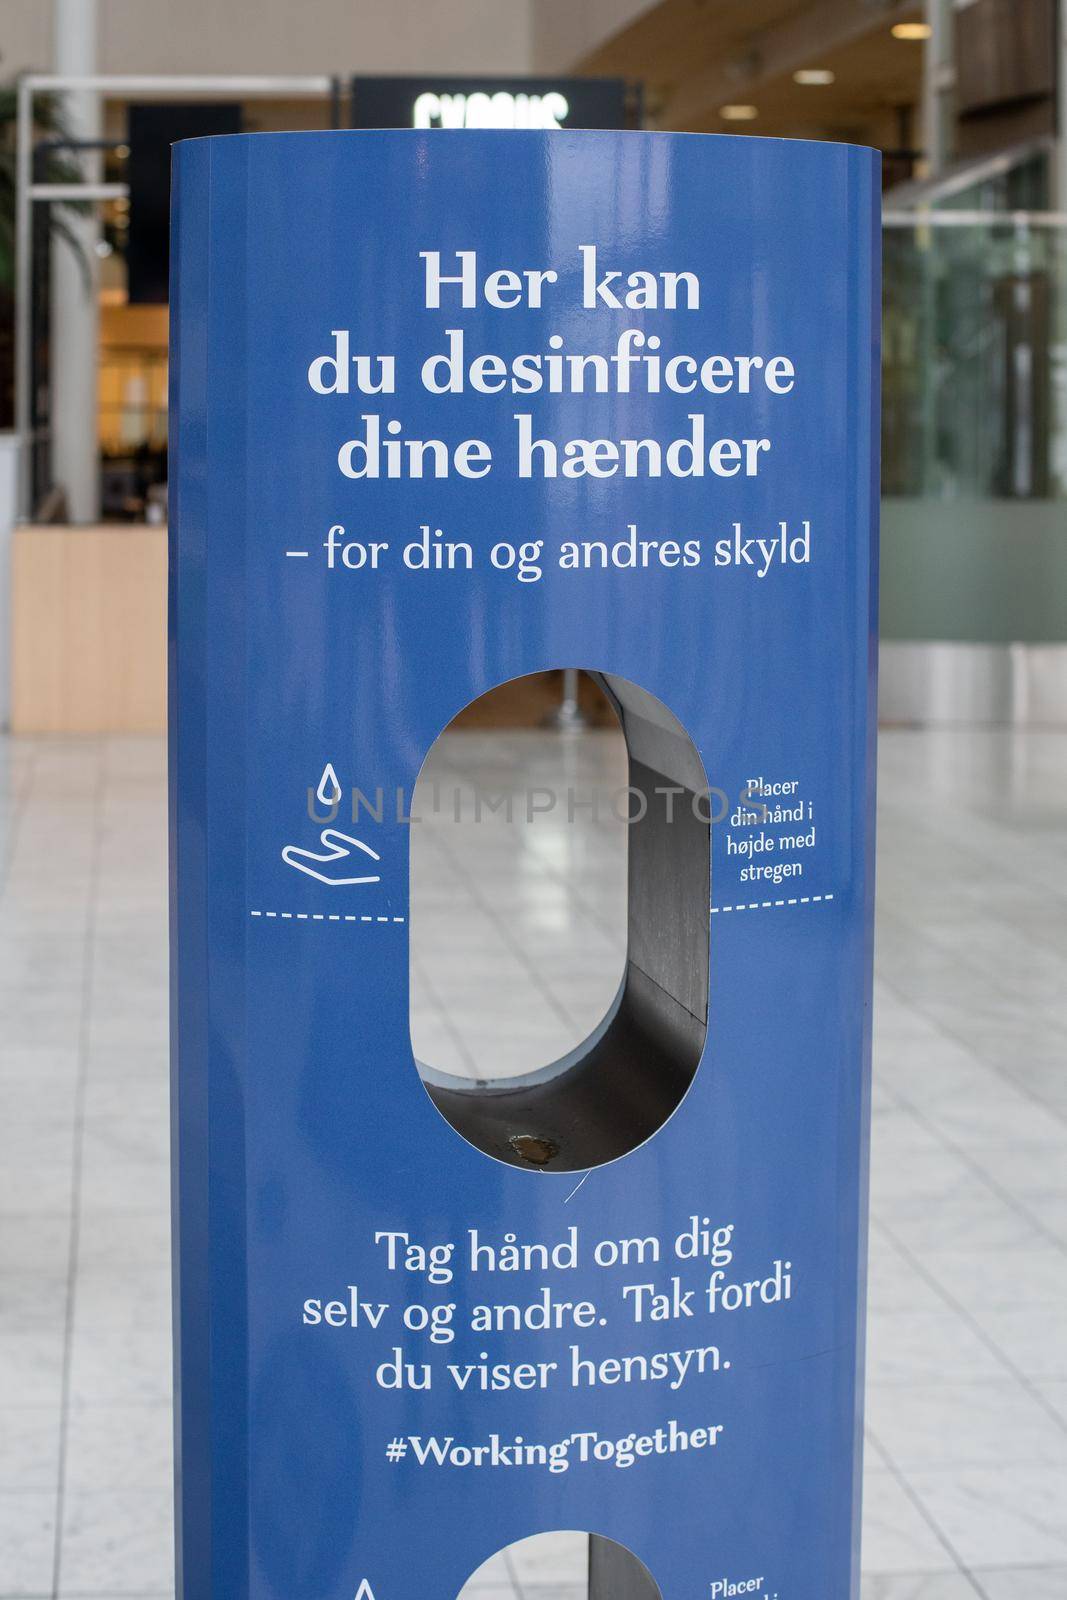 Hand Sanitizer Station in Fisketorvet Shopping Mall in Copenhagen by oliverfoerstner